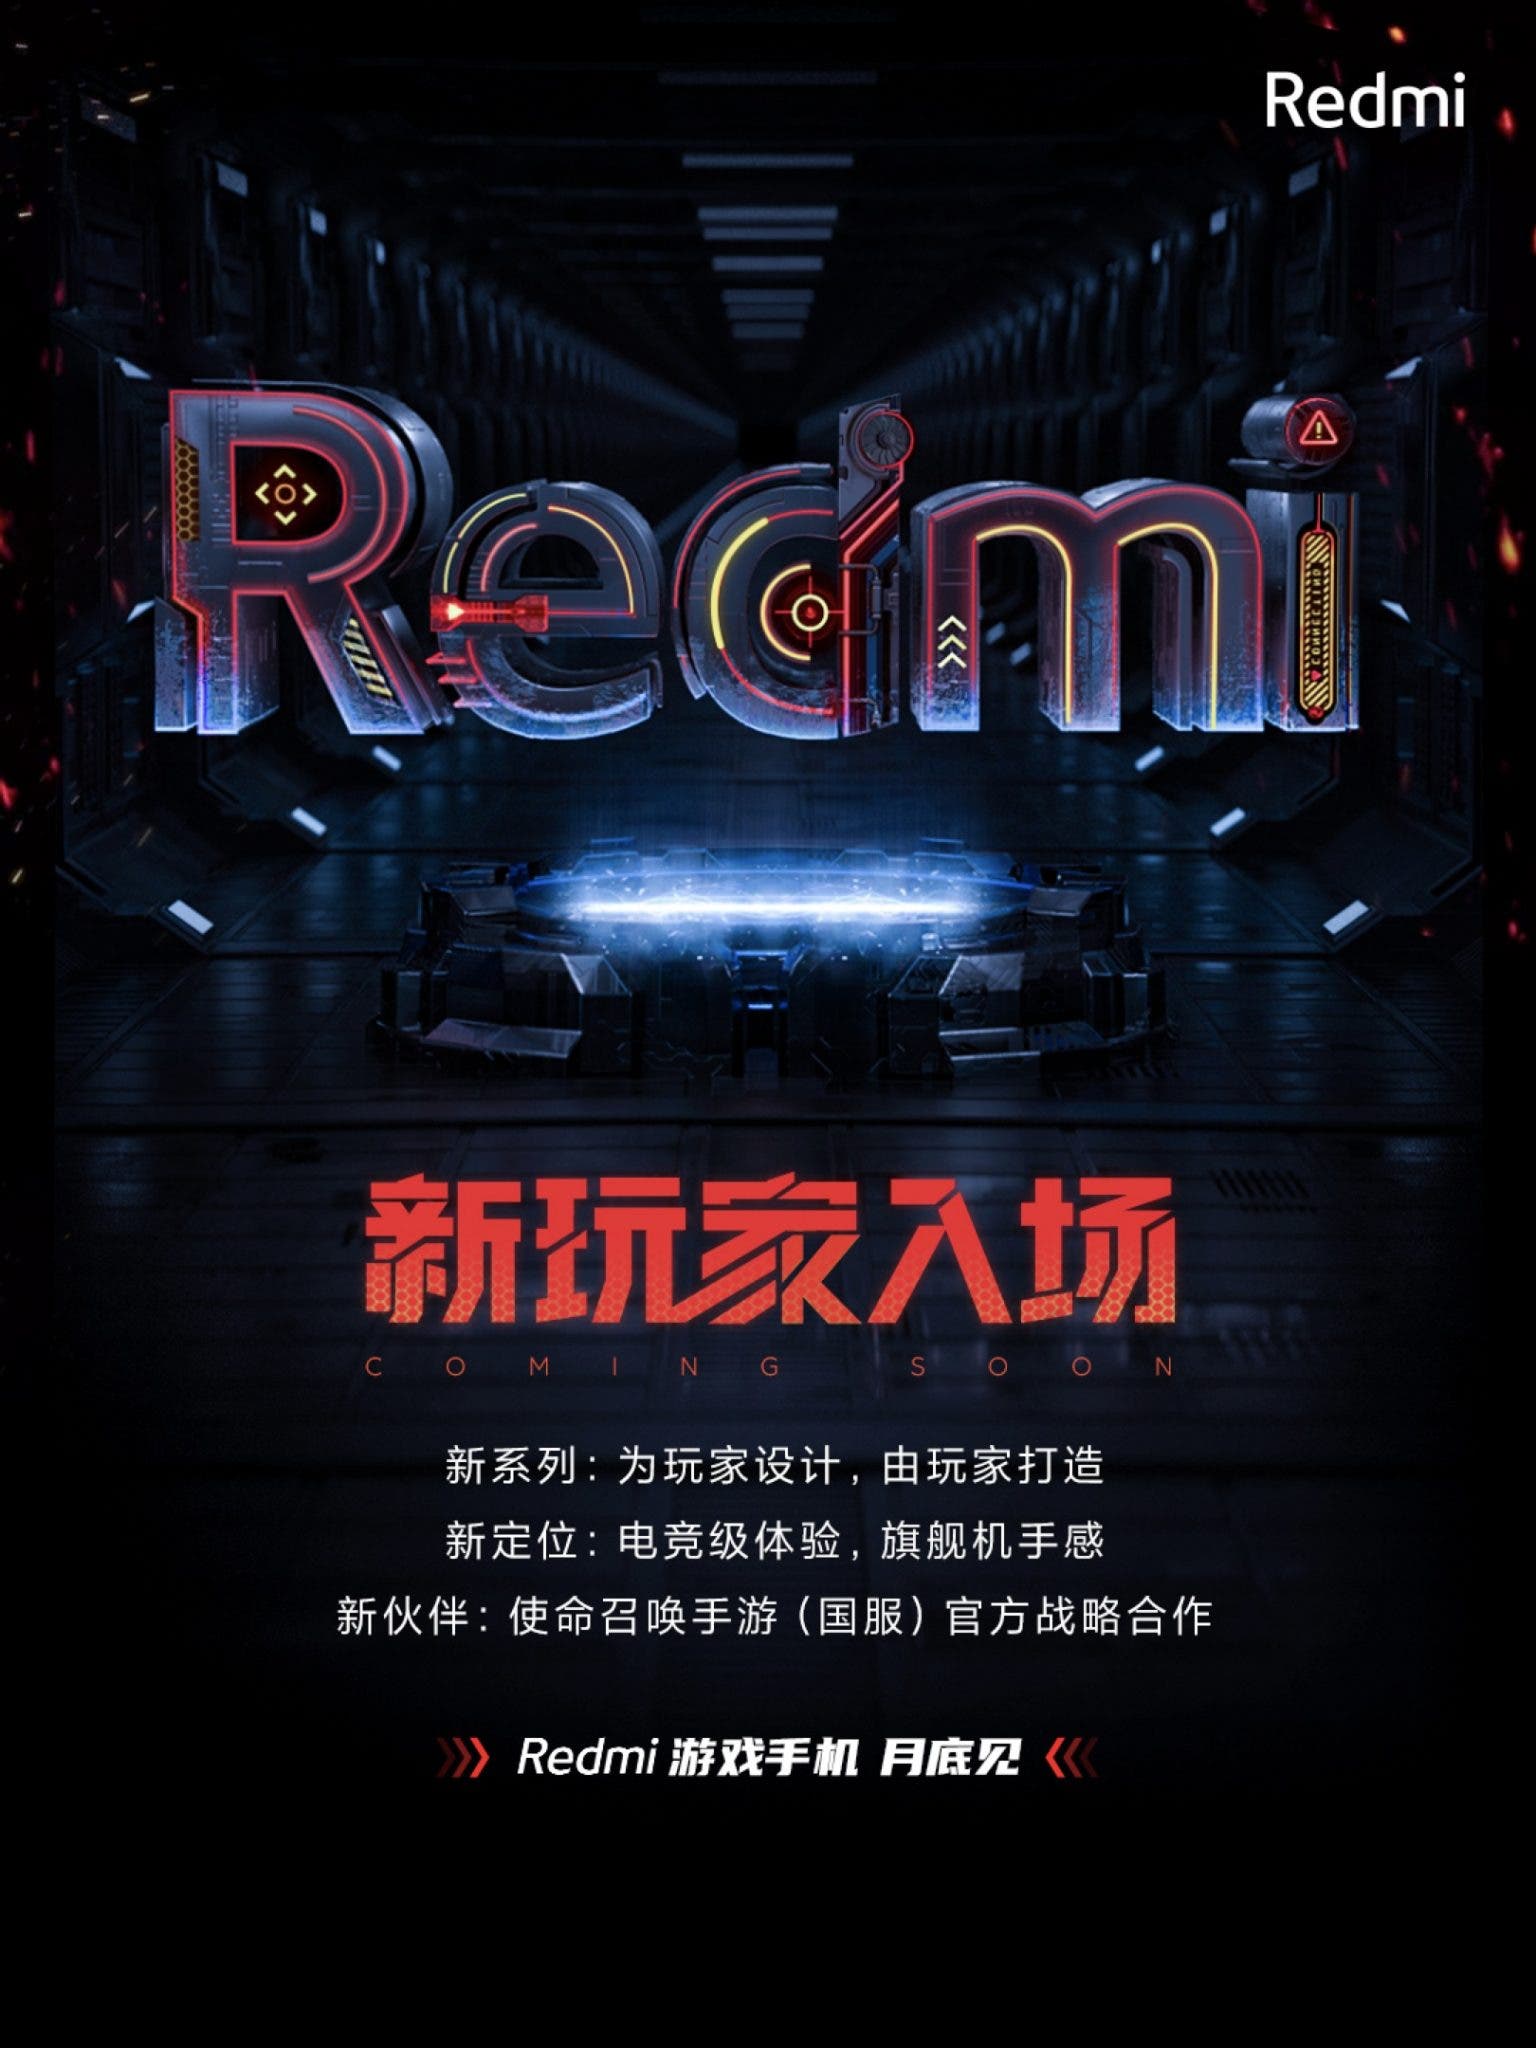 Redmi Oyun Akıllı Telefon Üstün Özelliklerle Nisan Sonunda Geliyor